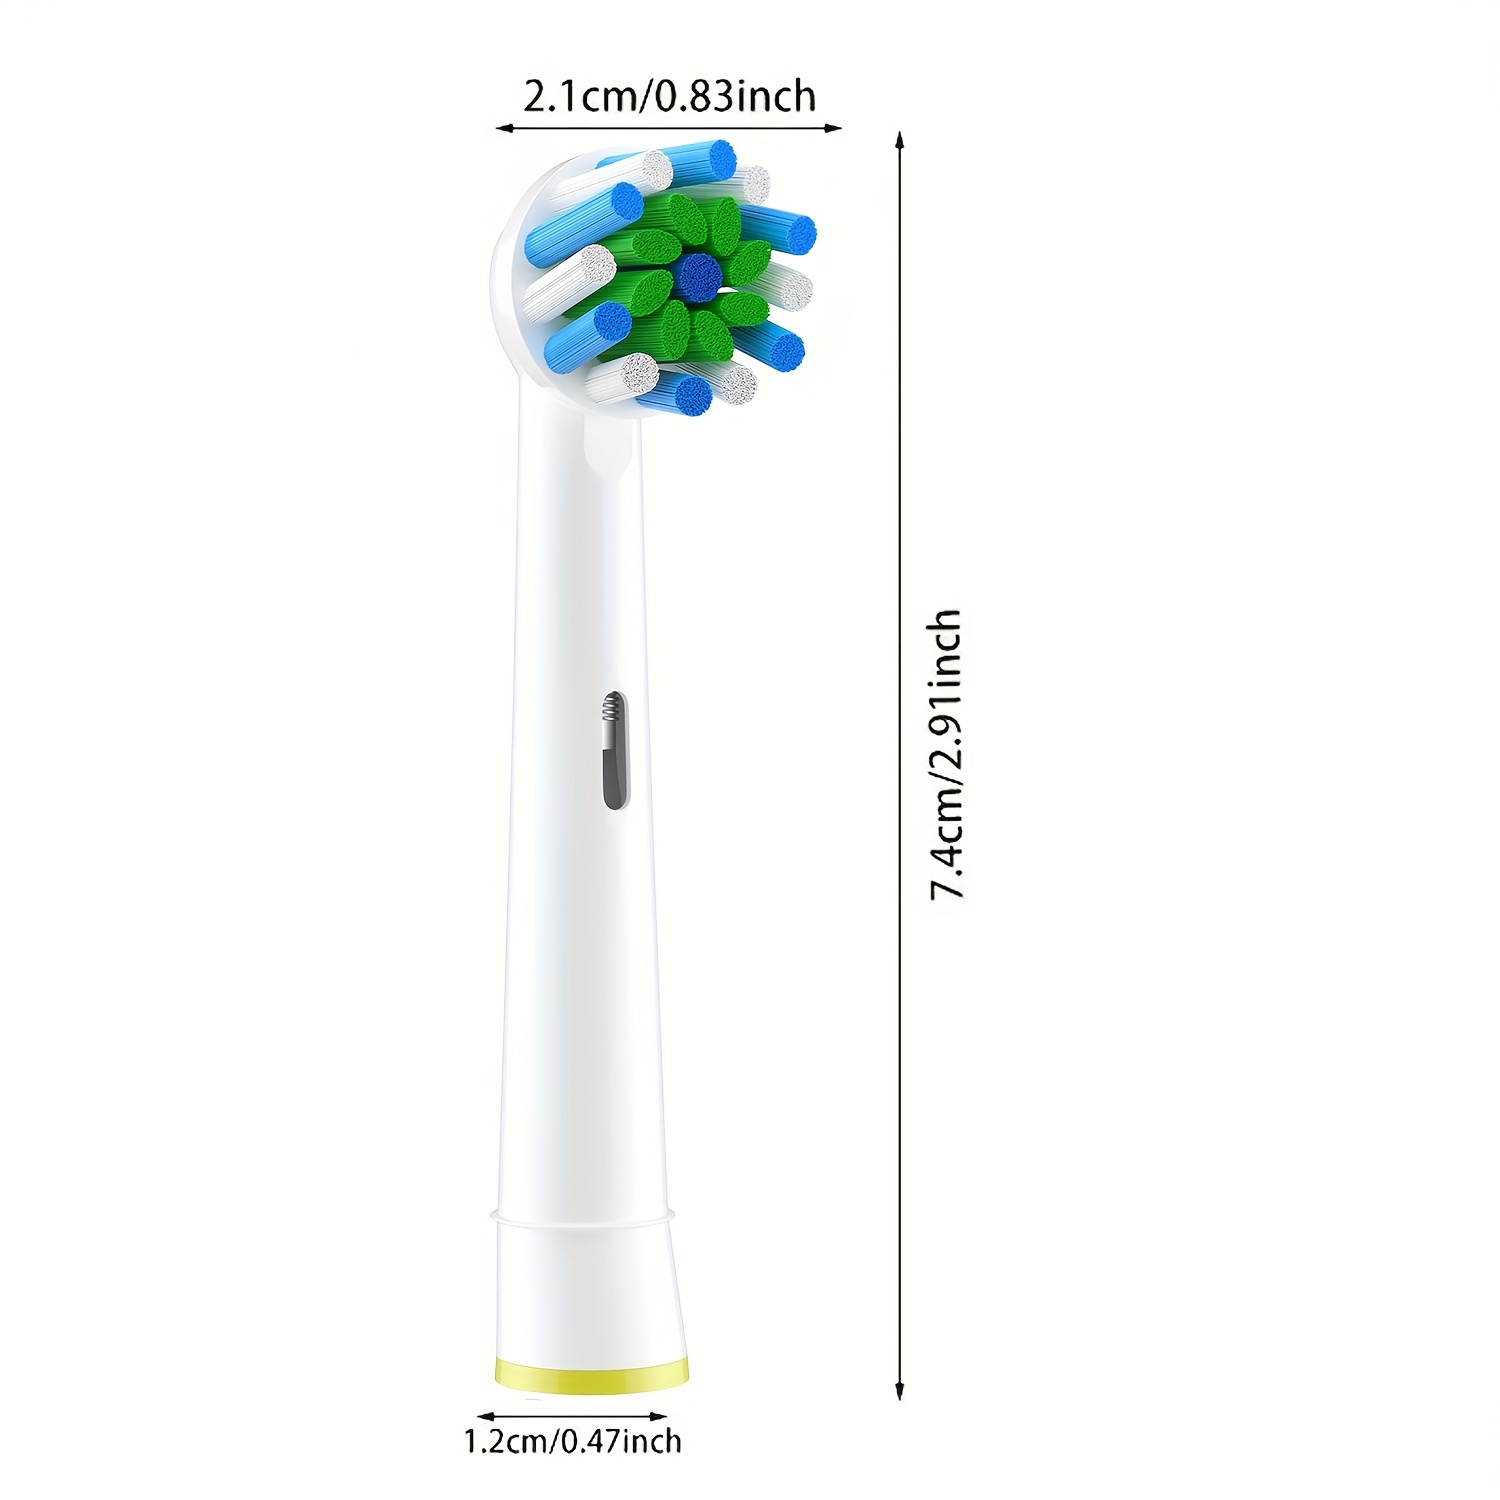 Cabezales de cepillo de repuesto para Oral B, paquete de 4 cabezales de  cepillo eléctrico genéricos cruzados para Oralb Braun, cepillos de dientes